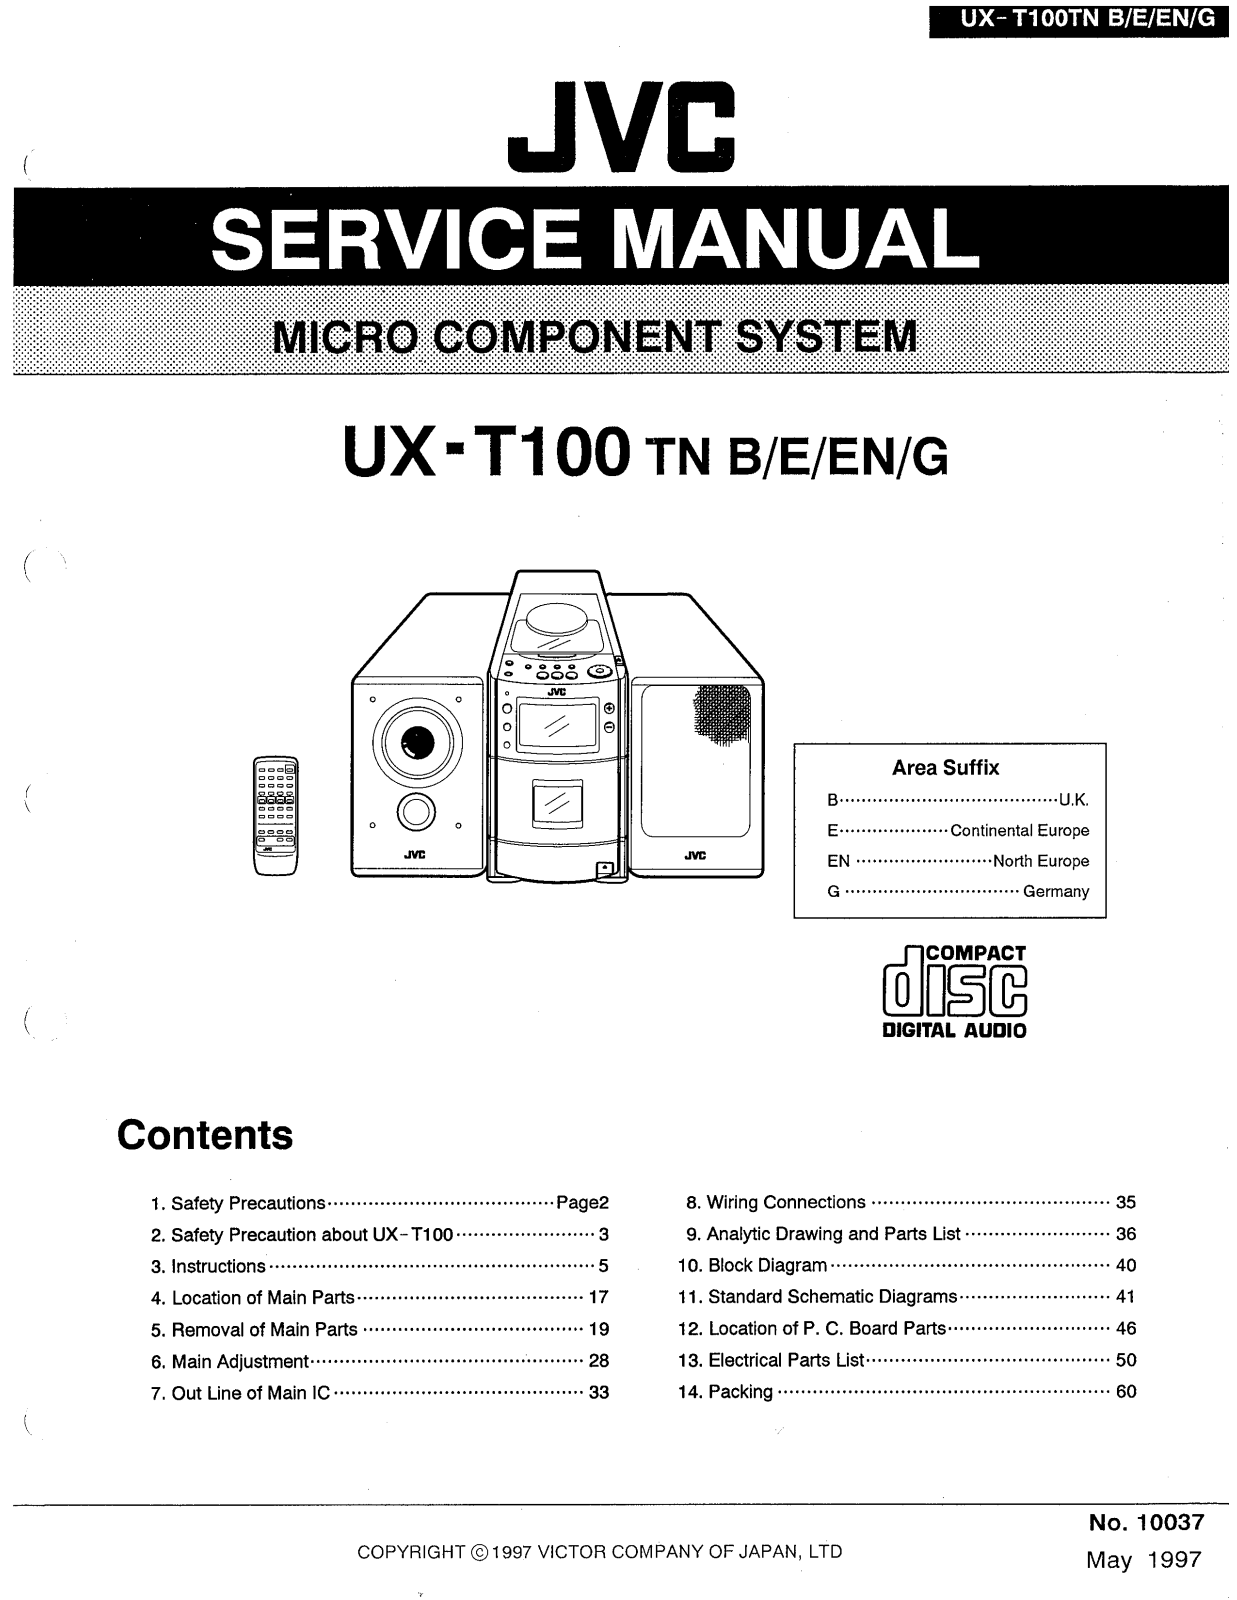 JVC UX-T100TN Service Manual